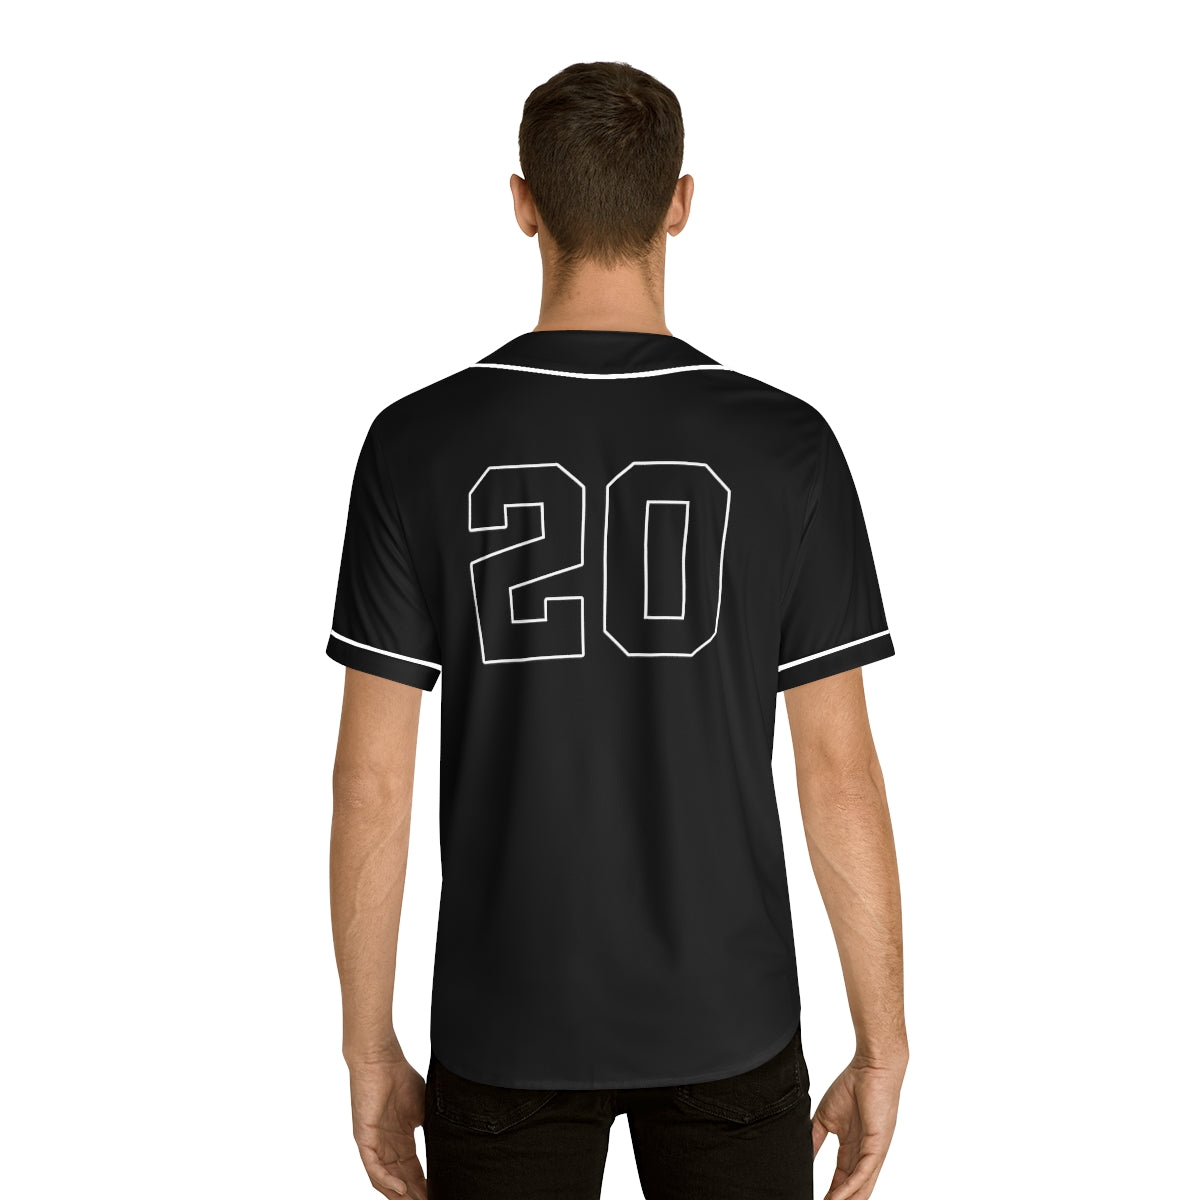 Printify Men's Baseball Jersey (aop) S / White